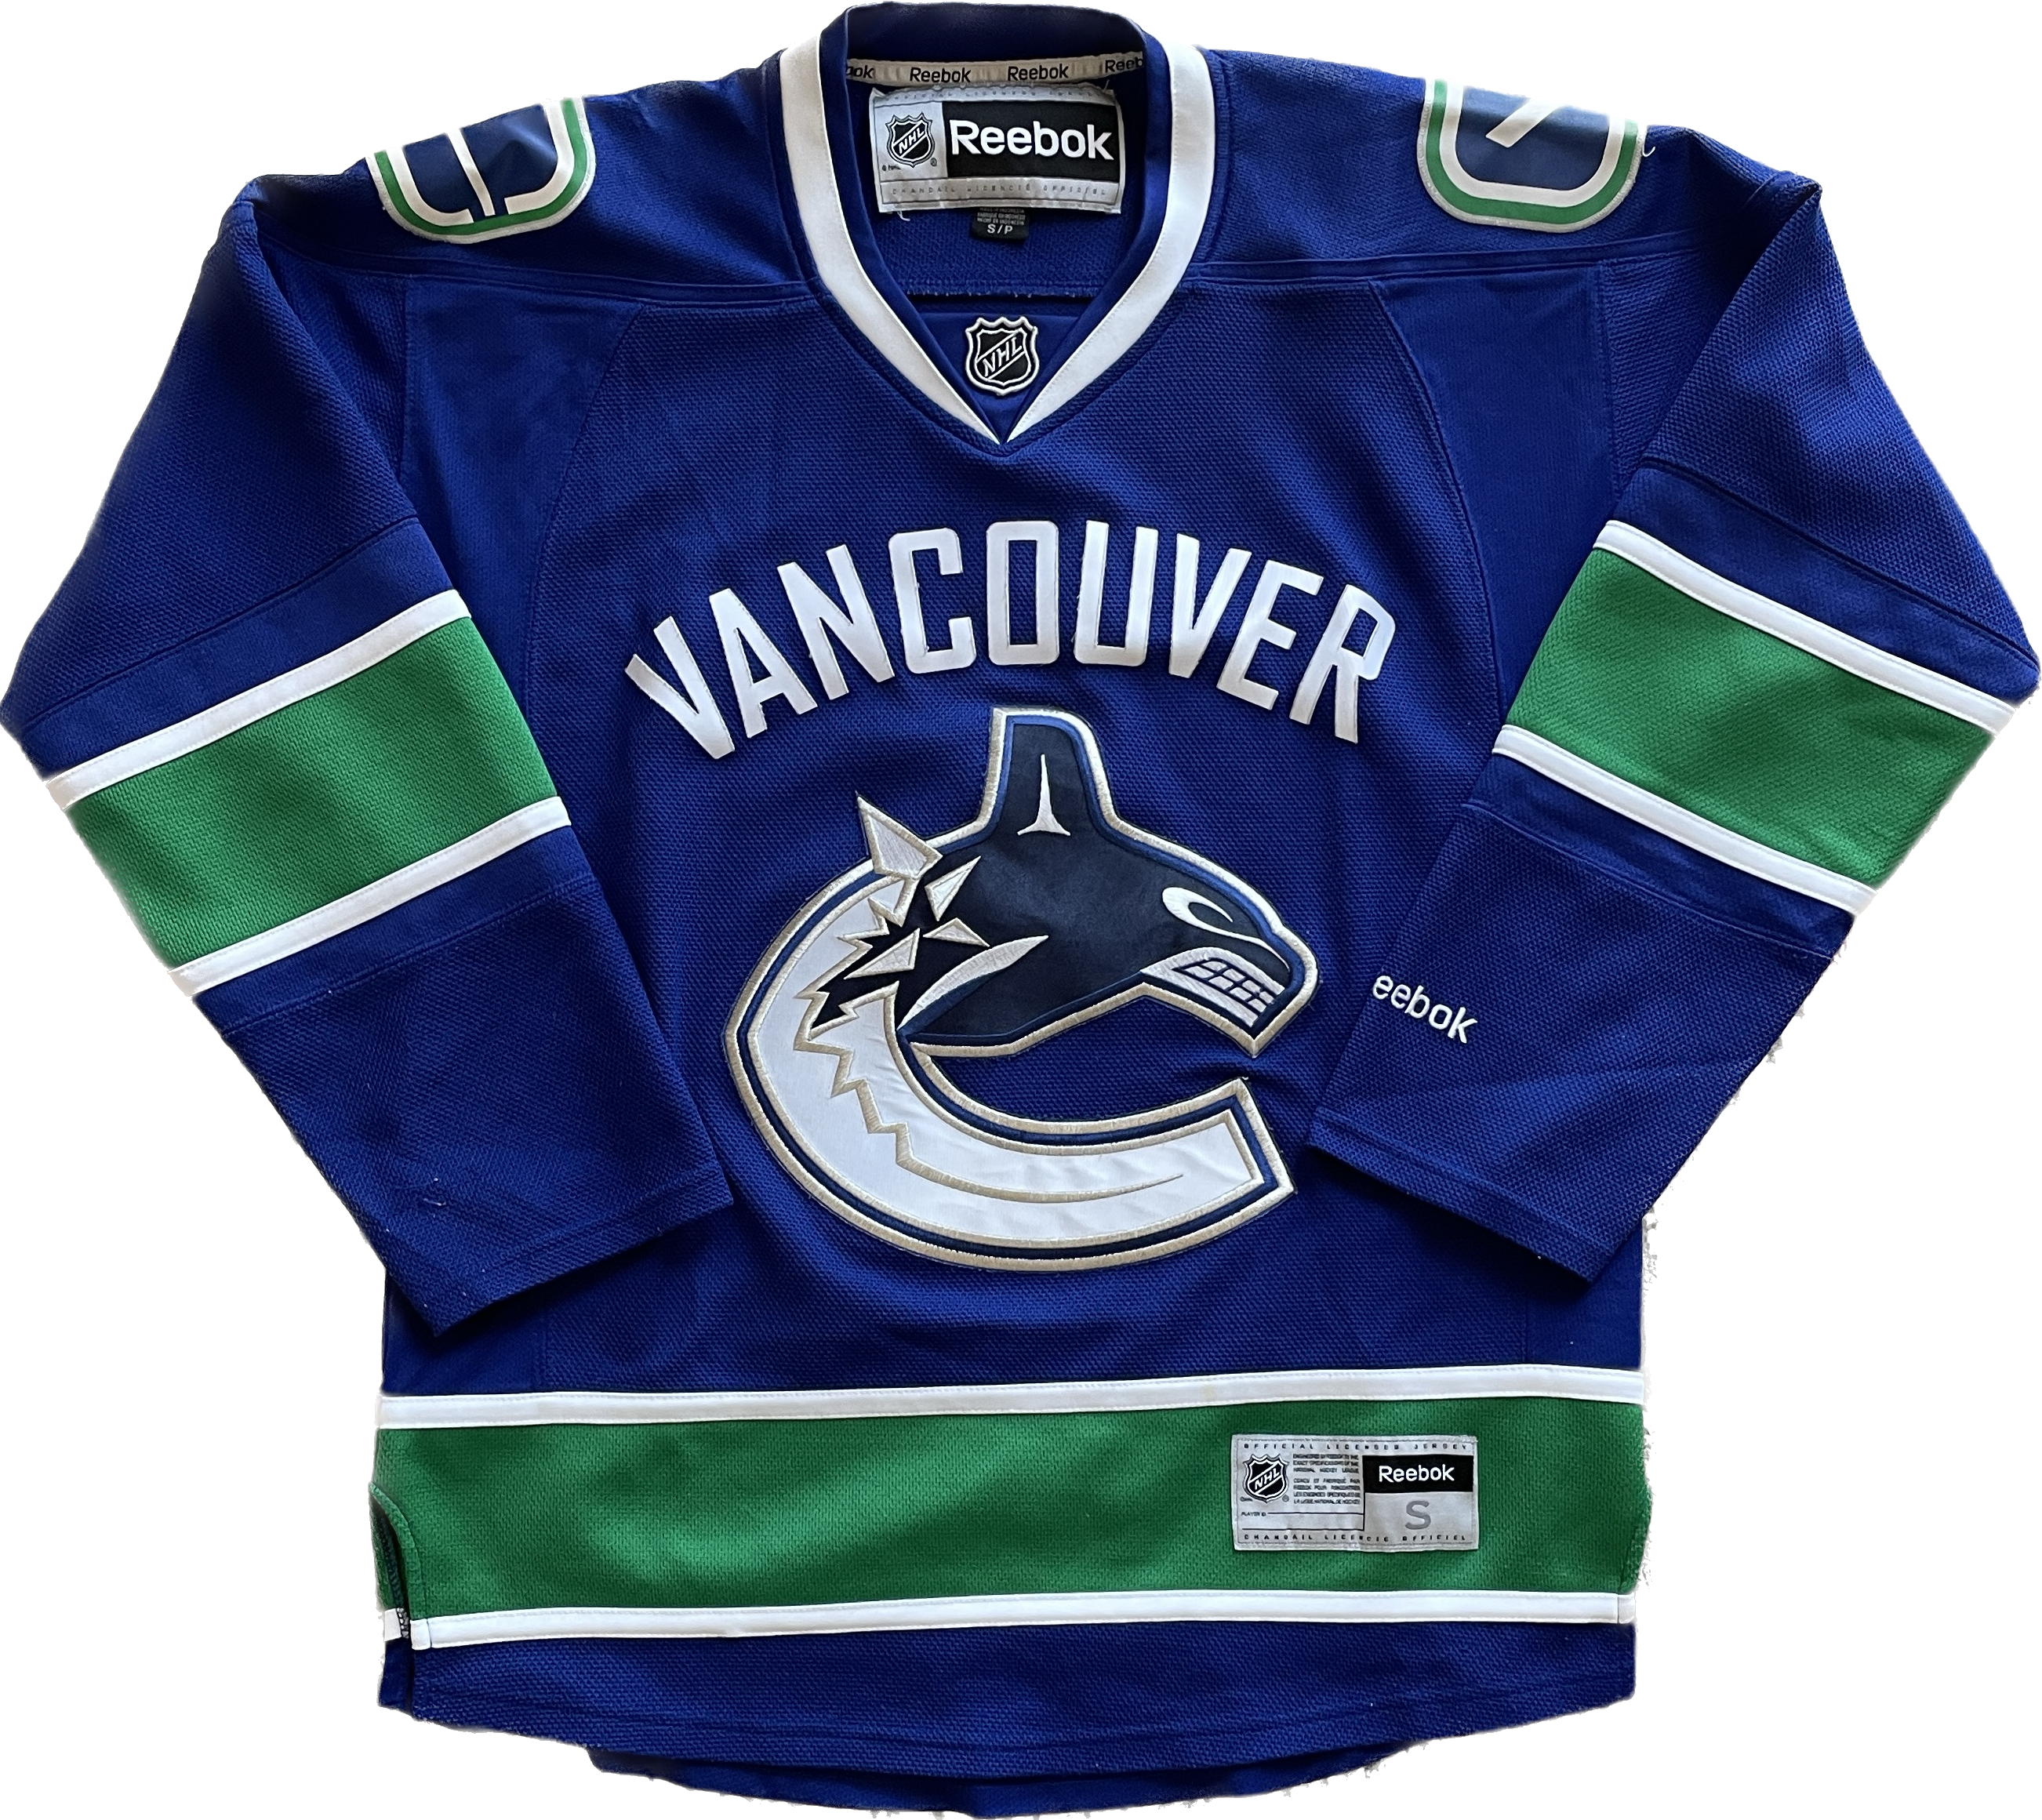 Vancouver Canucks NHL Hockey Jersey (S)